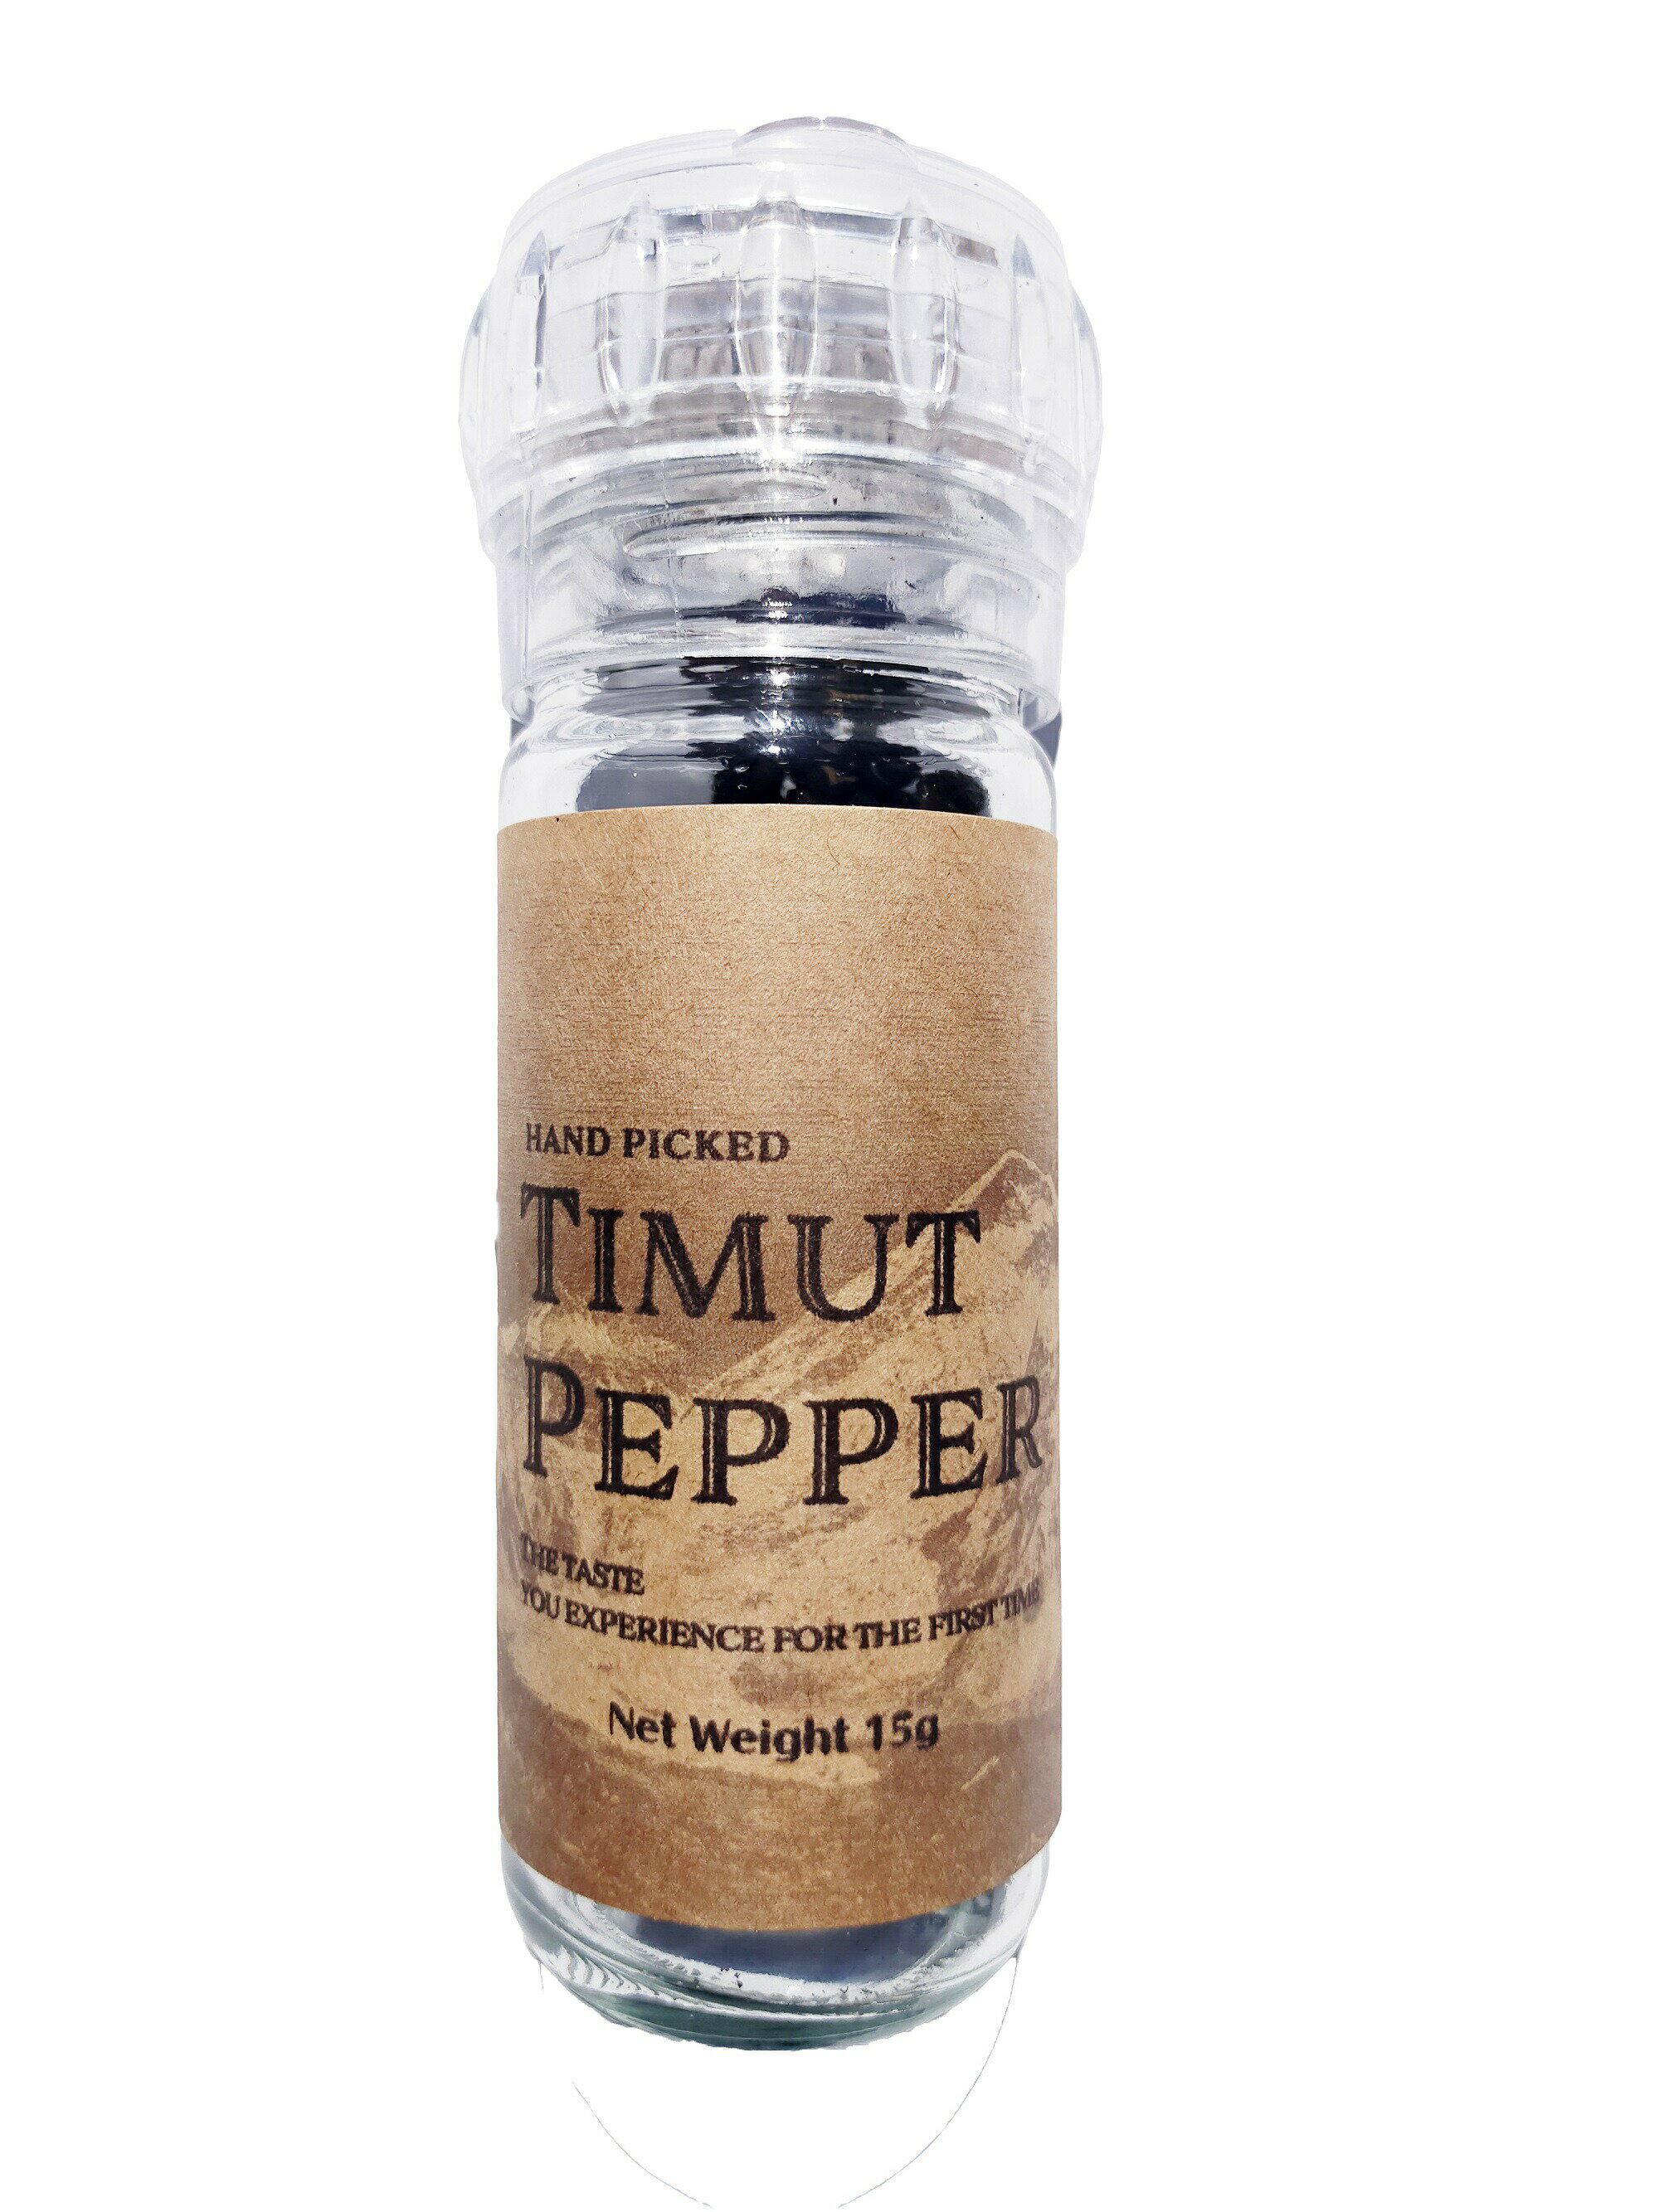 初めての味なのに日本人の味覚にもマッチ！どんな料理にでも使っちゃう！という人続出！ 今世界が最も注目する香辛料、スパイス Timut Pepper(Timur Pepper , Nepal Pepper (藤椒) )が日本初輸入。 この品質がお手頃に手に入るのはヤポネサンドだけではないでしょうか。 ティムットペッパーは育成、収穫が難しくコストがかかりすぎるため 日本での取り扱いはほとんどなく、たまに見つけても「え…こんな高いの…」か「安いけど…これ大丈夫？」というものがほとんどです。 一流のパティシエ、料理人に使用していただいたところ その品質と味を絶賛していただき こぞって新しいメニューを企画してくださいました。 どの商品も大好評をいただいているようで嬉しい限りです。 「ペッパー」と名は付きますが、香りはフルーティーで、 グレープルーツやパッションフルーツなどの柑橘系にたとえて説明されることが多い。 フルーティーな香りと共に、山椒に似た舌にピリピリくるような刺激的な辛さも持ち合わせている とてもユニークなスパイスなのです。 パスタ、ピザ、スイーツ、カクテル、カレー、和食…何にでも使える汎用性の高さ。 新しい食材で新しいアイディアを！ 黒コショウを使っていたすべての食材に合います！ ※本商品はティムットペッパーを日本向けにリデザインした商品です。 ティムットペッパー、カレー食材、唐揚げ食材、珍しい香辛料、スパイス、シーズニング、山椒、馬告、エスニック、ネパール料理、隠し味、ハーブ、香りづけ、ティムットペッパー、ネパールペッパー、ティムール 【ありとあらゆる食材にマッチ】料理の可能性を広げます 和食、洋食、中華、スイーツ、ドリンク、カレー 各分野の専門家たちが高く評価し料理に取り入れています。 家庭でもサッとミルで挽いてかけるだけで いつもの料理が格段にレベルアップ。 今まで黒コショウを使っていたのをこれに変えるだけで別の料理になります。 画像は田園調布のCacao ZOKU様。 ティムットペッパーのチョコレートは一番人気！ ティムットペッパーを店頭で販売していただいていますが 毎回入荷する度に完売します！ 西山製?、ラーメン、担々麺、青山椒、藤椒、ティムットペッパー、ネパールペッパー、ティムールペッパー、ラーメン、担々麺、中華料理、パクチー、タイ料理、timut pepper,timur pepperラーメンのプロ監修！担々麺＆塩ラーメン 北海道の有名製麺所とのコラボ どちらも弊社商品の 爽やかな痺れと風味が バランスをとりつつ アクセントにもなる 味を選ばず全てのラーメンに パスタ、イタリアン、ピザ、青山椒、藤椒、ティムットペッパー、ネパールペッパー、ティムールペッパー、ラーメン、担々麺、中華料理、パクチー、タイ料理、timut pepper,timur pepperイタリアン、フレンチetc..なんにでも使える 黒胡椒に飽きたときに ティムットの柑橘系の香りが合う レモン汁を少々加え仕上げた パスタのオイルに香りを移しても○ ピザにも相性抜群 黒胡椒が使えるものなら何でも合う 唐揚げ、調味料、スパイス、青山椒、藤椒、ティムットペッパー、ネパールペッパー、ティムールペッパー、ラーメン、担々麺、中華料理、パクチー、タイ料理、timut pepper,timur pepperもっと身近なところにも！新しいアイディア！ 塩味、醤油味どちらにも合う たっぷり使うのがオススメ 衣に混ぜて更に後がけするといい 和のメニューにも抜群に合う うなぎ、煮物、炒め物etc... 居酒屋メニュー全般にもどうぞ パスタ、イタリアン、ピザ、青山椒、藤椒、ティムットペッパー、ネパールペッパー、ティムールペッパー、ラーメン、担々麺、中華料理、パクチー、タイ料理、timut pepper,timur pepperスイーツに使う〜世界的なパティシエも使用〜 海外のショコラティエなどでは スパイスチョコなどに使われる 写真は和食の職人が考案 ティムットを藤椒として提供 和の雰囲気を損なわないデザートに 甘さに爽やかさと深みが加わった ティムットオイルにして アイスに練りこむことも もっと読む sincereblue,シンシアブルー、グリルシーズニング、ティムットペッパー、timutpepper、オリジナルカクテル、カクテルレシピ、ケータリングドリンク、珍しい香辛料、輸入香辛料、スパイス まだまだこんな使い方も！〜有名レストランからアイディアを！〜 原宿【シンシアブルー】 ミシュラン一つ星の味をカジュアルに楽しめるこのお店では ドリンクと魚料理に弊社のティムットペッパー(青山椒表記)を使用。 果実とも合う＝ソース、スイーツ、デザートも！ ドリンクにも＝ジン、ハイボール抜群に！写真は挽いたものをパッションピューレとオレンジジュースに。 シーズニング＝肉全般、魚全般なんにでもあう！ シェフ曰く、イタリアンには絶対合う！とのこと！ 奥田政行、ゆで論、ティムットペッパー、ティムールペッパー、ネパールペッパー、timut pepper,timur pepper,nepal pepper、アルケッチャーノ、 世界に認められる巨匠　奥田政行シェフも愛用 現在ヤポネサウンド合同会社のHPにてティムットペッパーの使用例などを公開中。 「使い方、難しそう…」と思ってる方も 生活に寄り添う使用方法がたくさん掲載されていますのでぜひご覧ください。 ・商品名 ティムットペッパー ・原材料名 ティムットペッパー100% ・内容量 15g ・賞味期限 別途商品ラベルに記載等 ・保存方法 直射日光、高温多湿を避け冷暗所にて保存 ・販売者 ヤポネサウンド合同会社 東京都品川区南品川6-5-3関連商品最高品質 手摘み藤椒( 四川青山椒 ) ホールタイプ 15g ( 挽い...最高品質 手摘み藤椒( 四川青山椒 ) ホールタイプ 30g ( 詰め...最高品質 手摘み藤椒( 四川青山椒 ) ホールタイプ ミル付き15g ...最高品質 手摘み 藤椒 ( 四川青山椒 ) ホールタイプ 100g (...1,498円1,590円2,680円3,280円最高品質 手摘みティムットペッパー パウダー タイプ 50g / Ha...最高品質 手摘み藤椒( 四川青山椒 ) パウダー タイプ 50g (...最高品質 手摘みティムットペッパー パウダー タイプ 100g / H...最高品質 手摘み藤椒( 四川青山椒 ) パウダー タイプ 100g ...1,790円1,890円3,290円3,480円" width="700"> 初めての味なのに日本人の味覚にもマッチ！どんな料理にでも使っちゃう！という人続出！ 今世界が最も注目する香辛料、スパイス Timut Pepper(Timur Pepper , Nepal Pepper (藤椒) )が日本初輸入。 この品質がお手頃に手に入るのはヤポネサンドだけではないでしょうか。 ティムットペッパーは育成、収穫が難しくコストがかかりすぎるため 日本での取り扱いはほとんどなく、たまに見つけても「え…こんな高いの…」か「安いけど…これ大丈夫？」というものがほとんどです。 一流のパティシエ、料理人に使用していただいたところ その品質と味を絶賛していただき こぞって新しいメニューを企画してくださいました。 どの商品も大好評をいただいているようで嬉しい限りです。 「ペッパー」と名は付きますが、香りはフルーティーで、 グレープルーツやパッションフルーツなどの柑橘系にたとえて説明されることが多い。 フルーティーな香りと共に、山椒に似た舌にピリピリくるような刺激的な辛さも持ち合わせている とてもユニークなスパイスなのです。 パスタ、ピザ、スイーツ、カクテル、カレー、和食…何にでも使える汎用性の高さ。 新しい食材で新しいアイディアを！ 黒コショウを使っていたすべての食材に合います！ ※本商品はティムットペッパーを日本向けにリデザインした商品です。 ティムットペッパー、カレー食材、唐揚げ食材、珍しい香辛料、スパイス、シーズニング、山椒、馬告、エスニック、ネパール料理、隠し味、ハーブ、香りづけ、ティムットペッパー、ネパールペッパー、ティムール 【ありとあらゆる食材にマッチ】料理の可能性を広げます 和食、洋食、中華、スイーツ、ドリンク、カレー 各分野の専門家たちが高く評価し料理に取り入れています。 家庭でもサッとミルで挽いてかけるだけで いつもの料理が格段にレベルアップ。 今まで黒コショウを使っていたのをこれに変えるだけで別の料理になります。 画像は田園調布のCacao ZOKU様。 ティムットペッパーのチョコレートは一番人気！ ティムットペッパーを店頭で販売していただいていますが 毎回入荷する度に完売します！ 西山製?、ラーメン、担々麺、青山椒、藤椒、ティムットペッパー、ネパールペッパー、ティムールペッパー、ラーメン、担々麺、中華料理、パクチー、タイ料理、timut pepper,timur pepperラーメンのプロ監修！担々麺＆塩ラーメン 北海道の有名製麺所とのコラボ どちらも弊社商品の 爽やかな痺れと風味が バランスをとりつつ アクセントにもなる 味を選ばず全てのラーメンに パスタ、イタリアン、ピザ、青山椒、藤椒、ティムットペッパー、ネパールペッパー、ティムールペッパー、ラーメン、担々麺、中華料理、パクチー、タイ料理、timut pepper,timur pepperイタリアン、フレンチetc..なんにでも使える 黒胡椒に飽きたときに ティムットの柑橘系の香りが合う レモン汁を少々加え仕上げた パスタのオイルに香りを移しても○ ピザにも相性抜群 黒胡椒が使えるものなら何でも合う 唐揚げ、調味料、スパイス、青山椒、藤椒、ティムットペッパー、ネパールペッパー、ティムールペッパー、ラーメン、担々麺、中華料理、パクチー、タイ料理、timut pepper,timur pepperもっと身近なところにも！新しいアイディア！ 塩味、醤油味どちらにも合う たっぷり使うのがオススメ 衣に混ぜて更に後がけするといい 和のメニューにも抜群に合う うなぎ、煮物、炒め物etc... 居酒屋メニュー全般にもどうぞ パスタ、イタリアン、ピザ、青山椒、藤椒、ティムットペッパー、ネパールペッパー、ティムールペッパー、ラーメン、担々麺、中華料理、パクチー、タイ料理、timut pepper,timur pepperスイーツに使う〜世界的なパティシエも使用〜 海外のショコラティエなどでは スパイスチョコなどに使われる 写真は和食の職人が考案 ティムットを藤椒として提供 和の雰囲気を損なわないデザートに 甘さに爽やかさと深みが加わった ティムットオイルにして アイスに練りこむことも もっと読む sincereblue,シンシアブルー、グリルシーズニング、ティムットペッパー、timutpepper、オリジナルカクテル、カクテルレシピ、ケータリングドリンク、珍しい香辛料、輸入香辛料、スパイス まだまだこんな使い方も！〜有名レストランからアイディアを！〜 原宿【シンシアブルー】 ミシュラン一つ星の味をカジュアルに楽しめるこのお店では ドリンクと魚料理に弊社のティムットペッパー(青山椒表記)を使用。 果実とも合う＝ソース、スイーツ、デザートも！ ドリンクにも＝ジン、ハイボール抜群に！写真は挽いたものをパッションピューレとオレンジジュースに。 シーズニング＝肉全般、魚全般なんにでもあう！ シェフ曰く、イタリアンには絶対合う！とのこと！ 奥田政行、ゆで論、ティムットペッパー、ティムールペッパー、ネパールペッパー、timut pepper,timur pepper,nepal pepper、アルケッチャーノ、 世界に認められる巨匠　奥田政行シェフも愛用 現在ヤポネサウンド合同会社のHPにてティムットペッパーの使用例などを公開中。 2022年の8月International Chocolate Awardsにて 弊社のティムットペッパーを使用した 田園調布Cacao Zoku様によるティムットペッパーチョコレートが見事に入賞しました！ 「使い方、難しそう…」と思ってる方も 生活に寄り添う使用方法がたくさん掲載されていますのでぜひご覧ください。